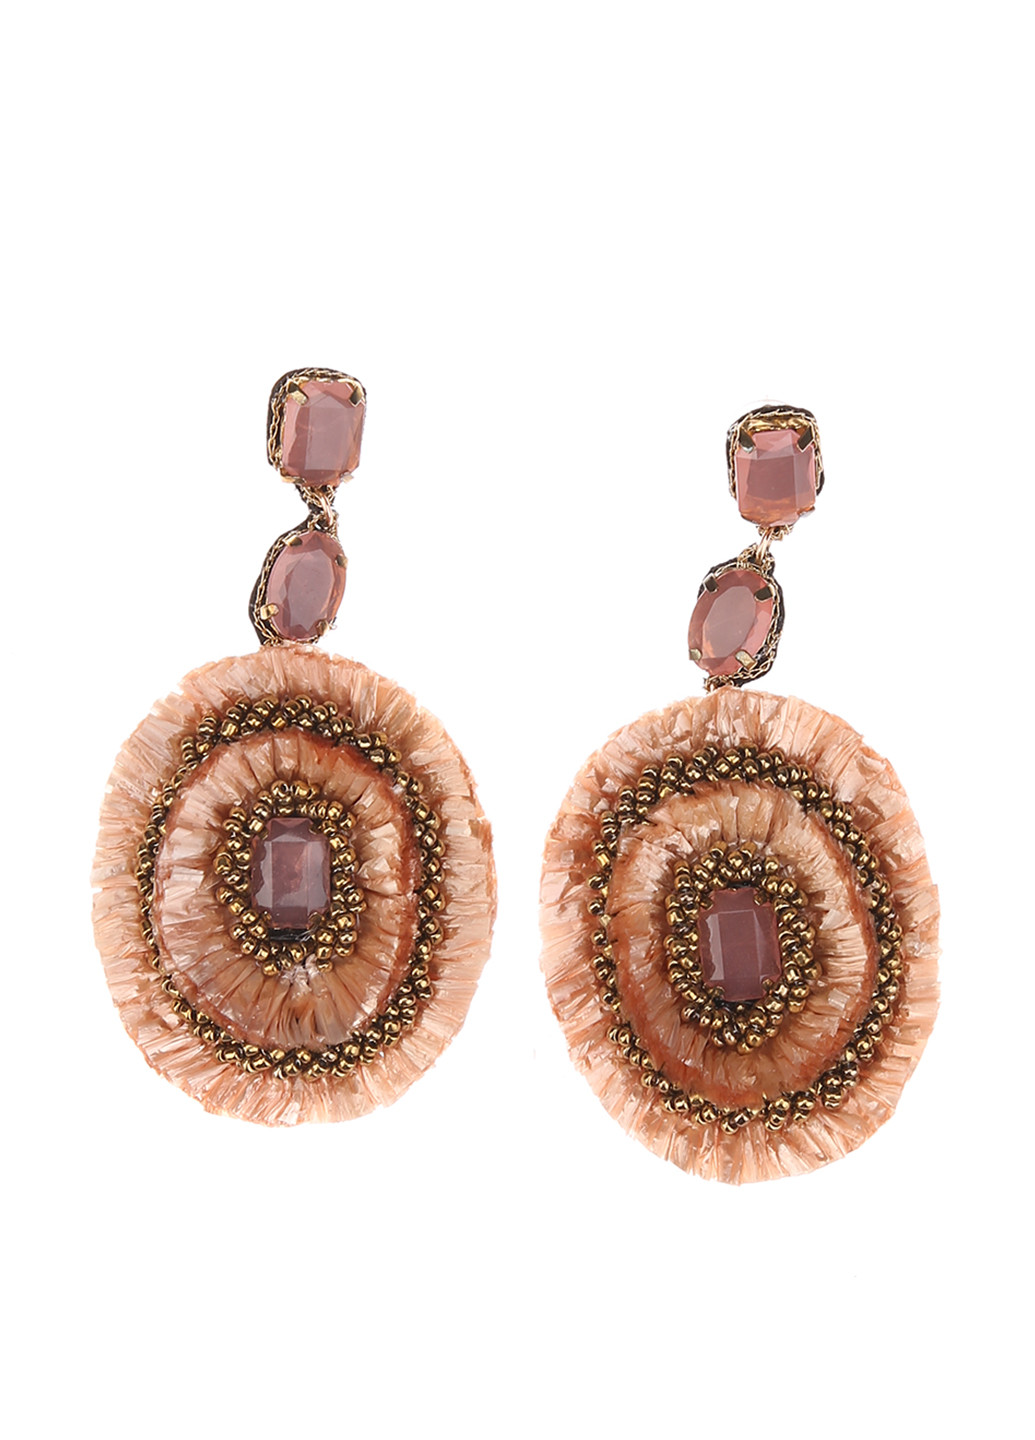 Сережки Heine сережки з підвісками однотонні рожево-коричневі пластик, метал